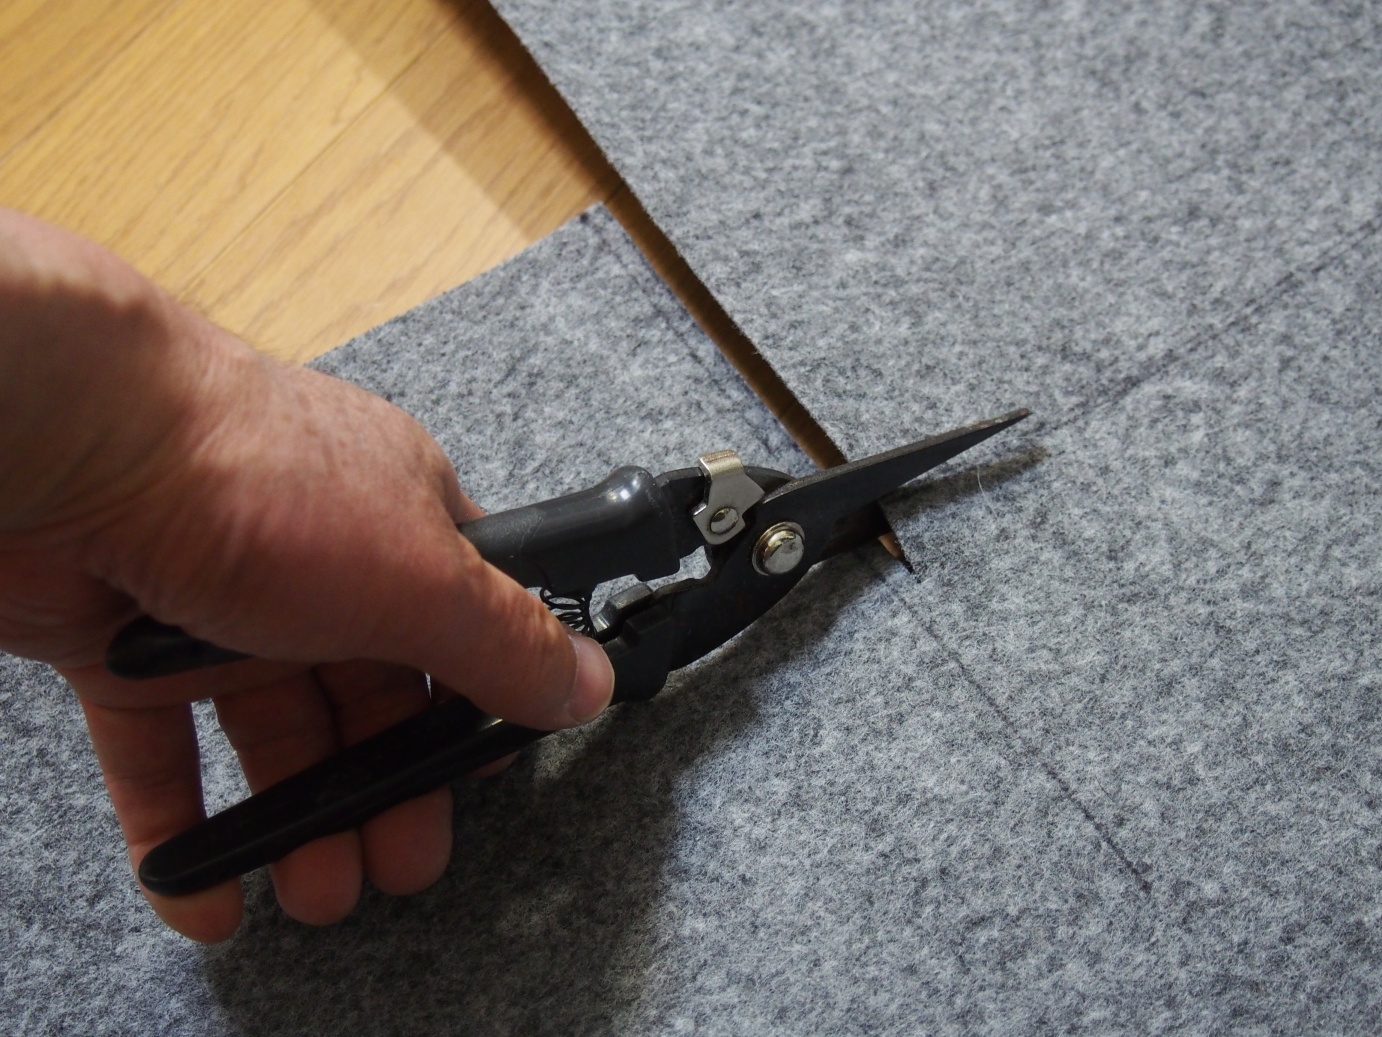 5. Cutting carpet